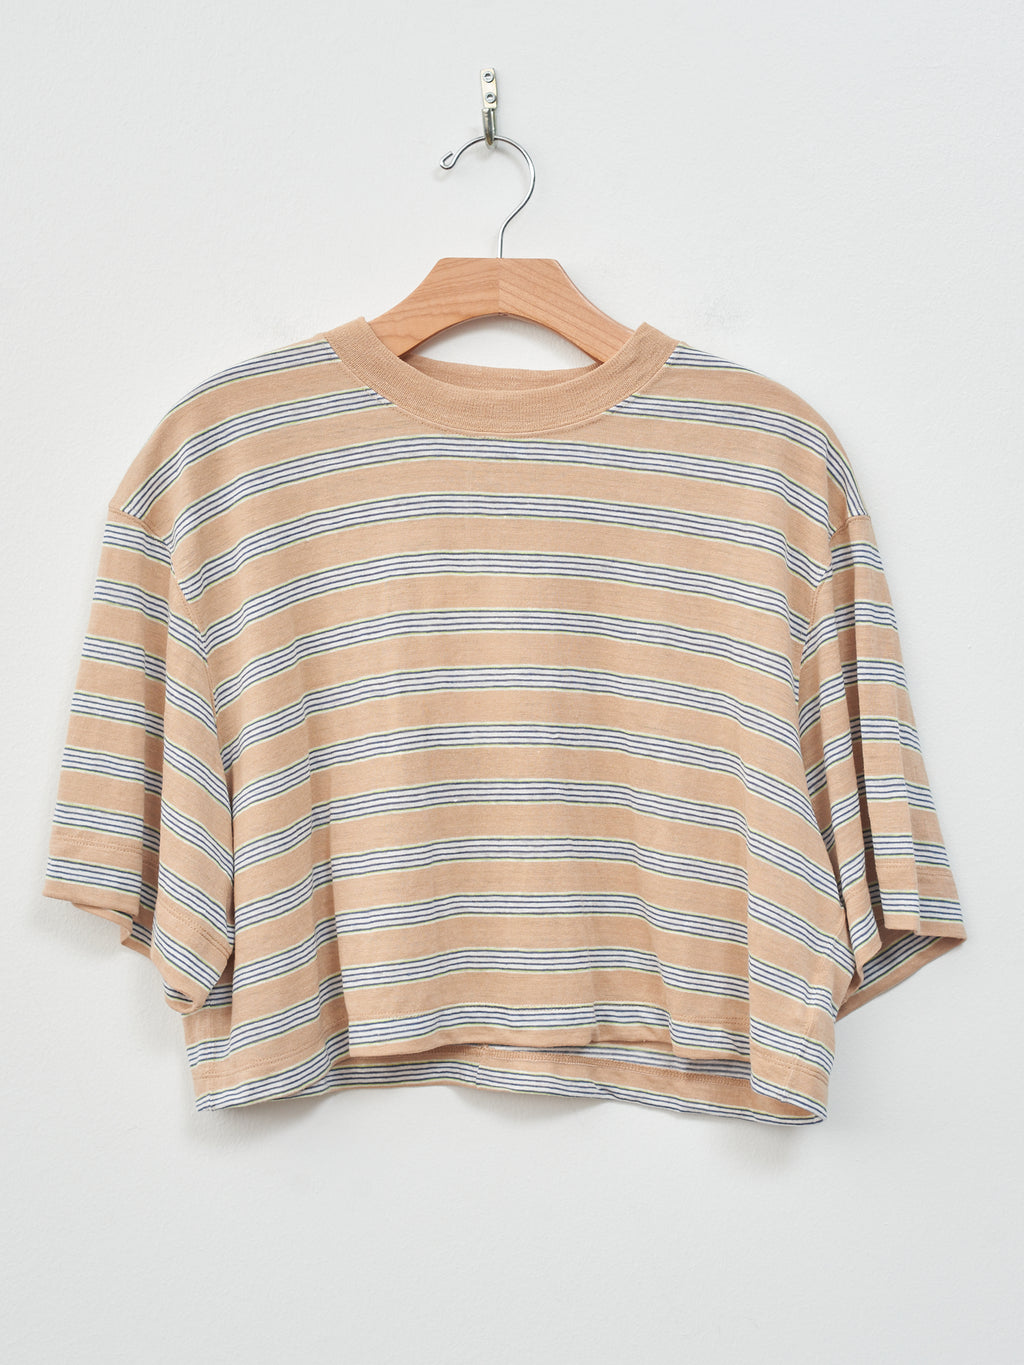 Namu Shop - Unfil Hemp Striped Jersey Cropped Tee - Beige Stripe